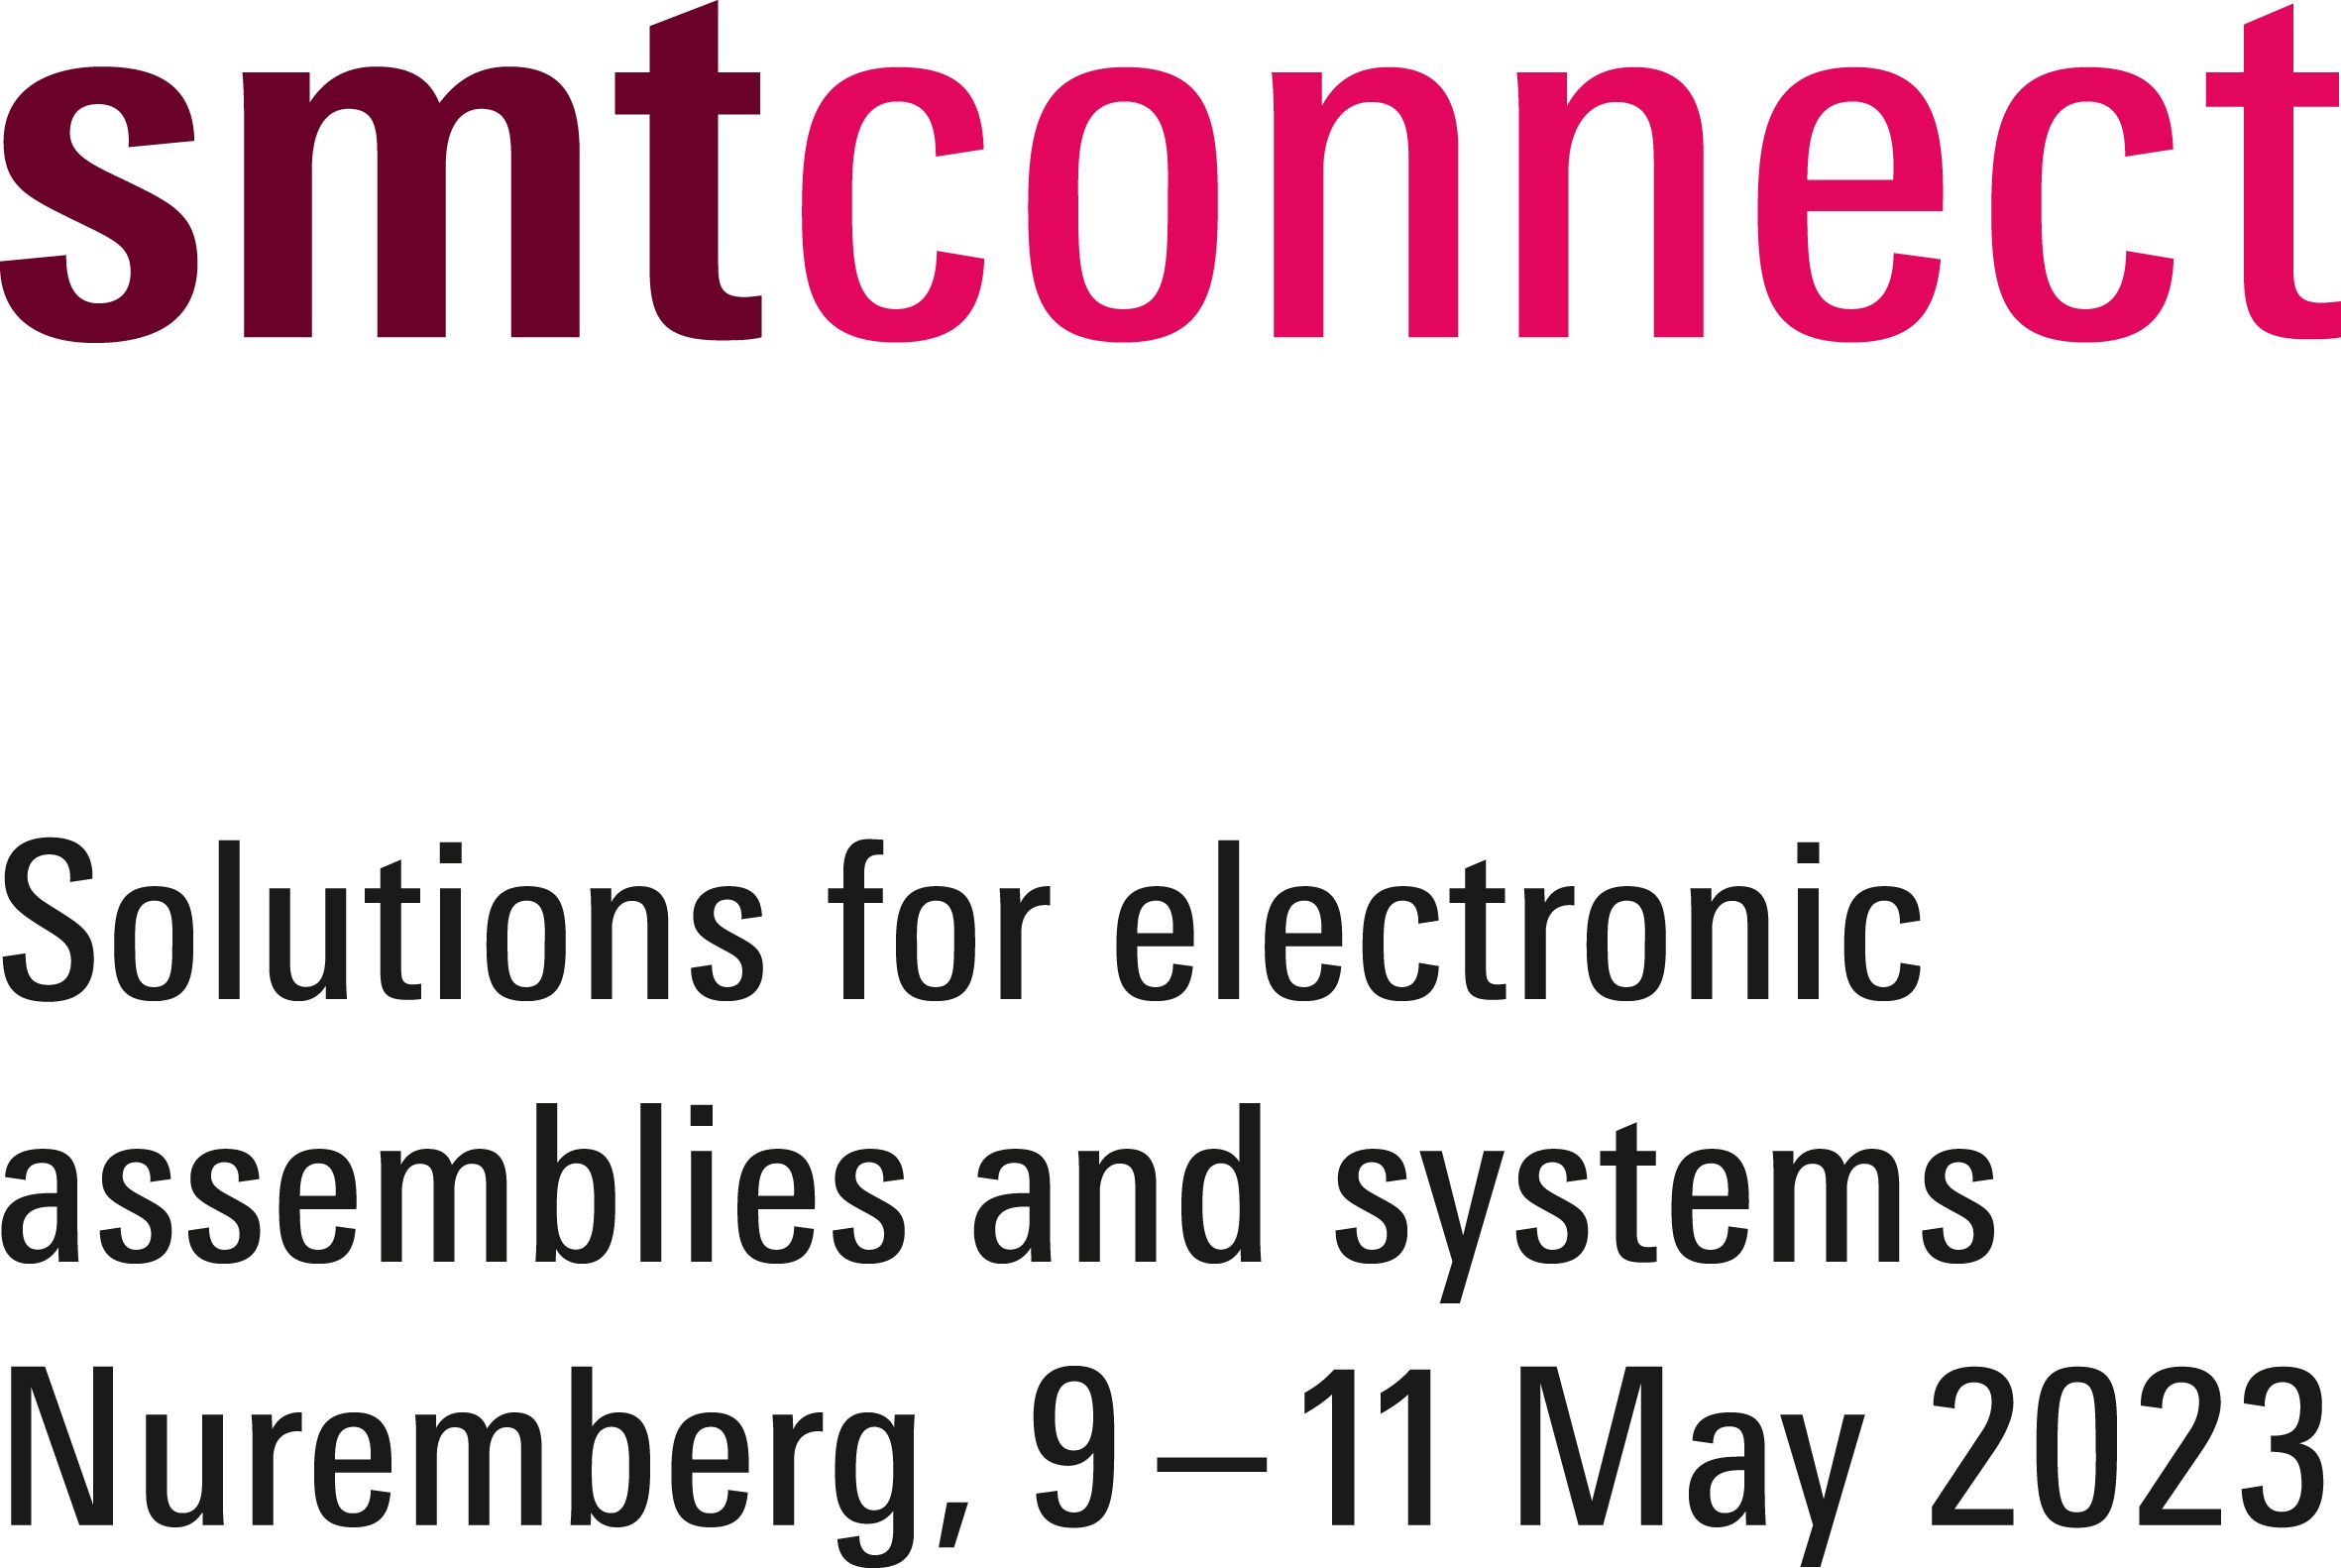 SMTconnect fuarı 9-11 mayıs 2023'te Nürnberg'de